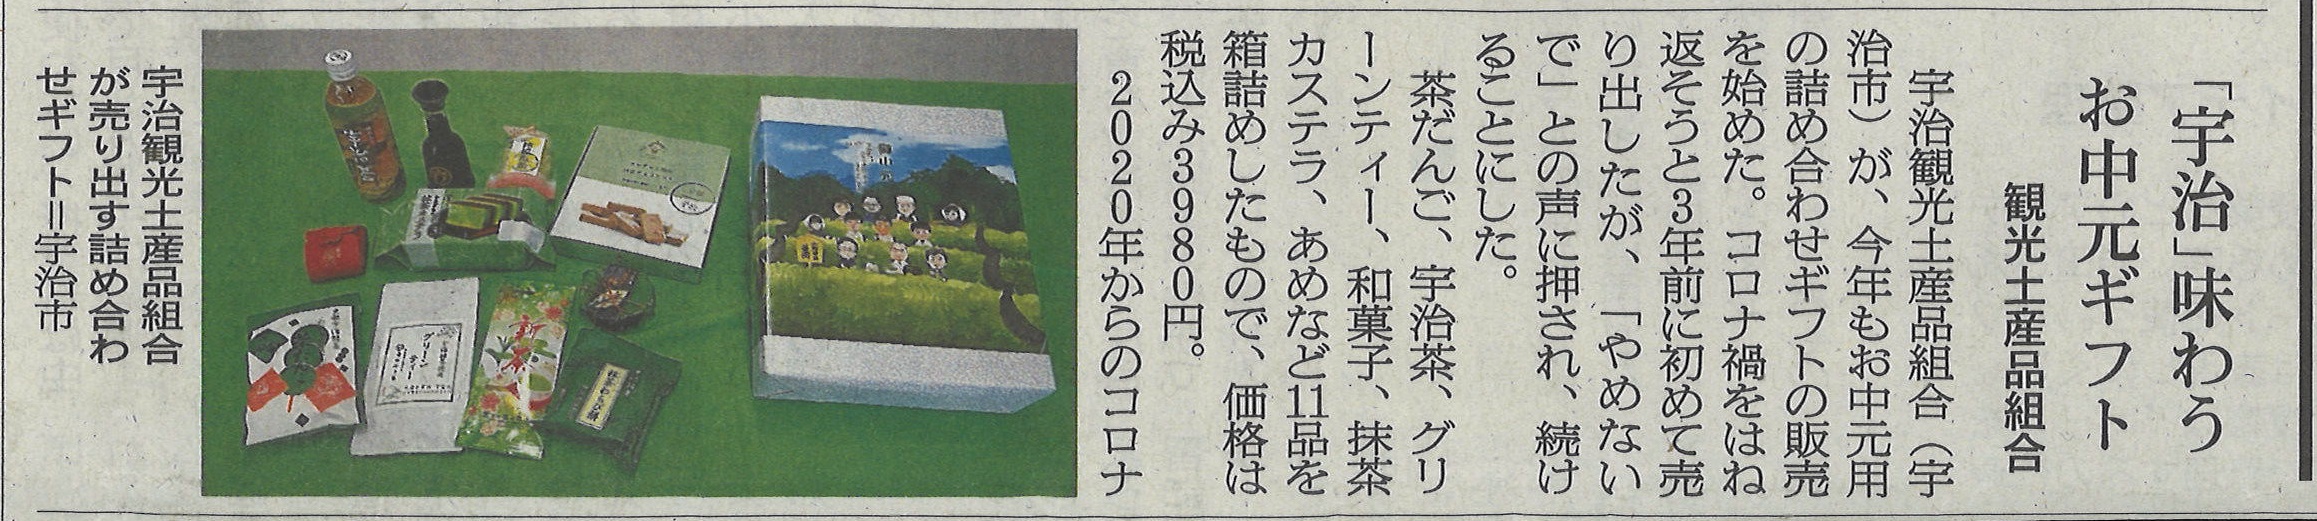 6月13日 朝日新聞にて、宇治観光土産品組合による第七回目のギフト(お中元)が紹介